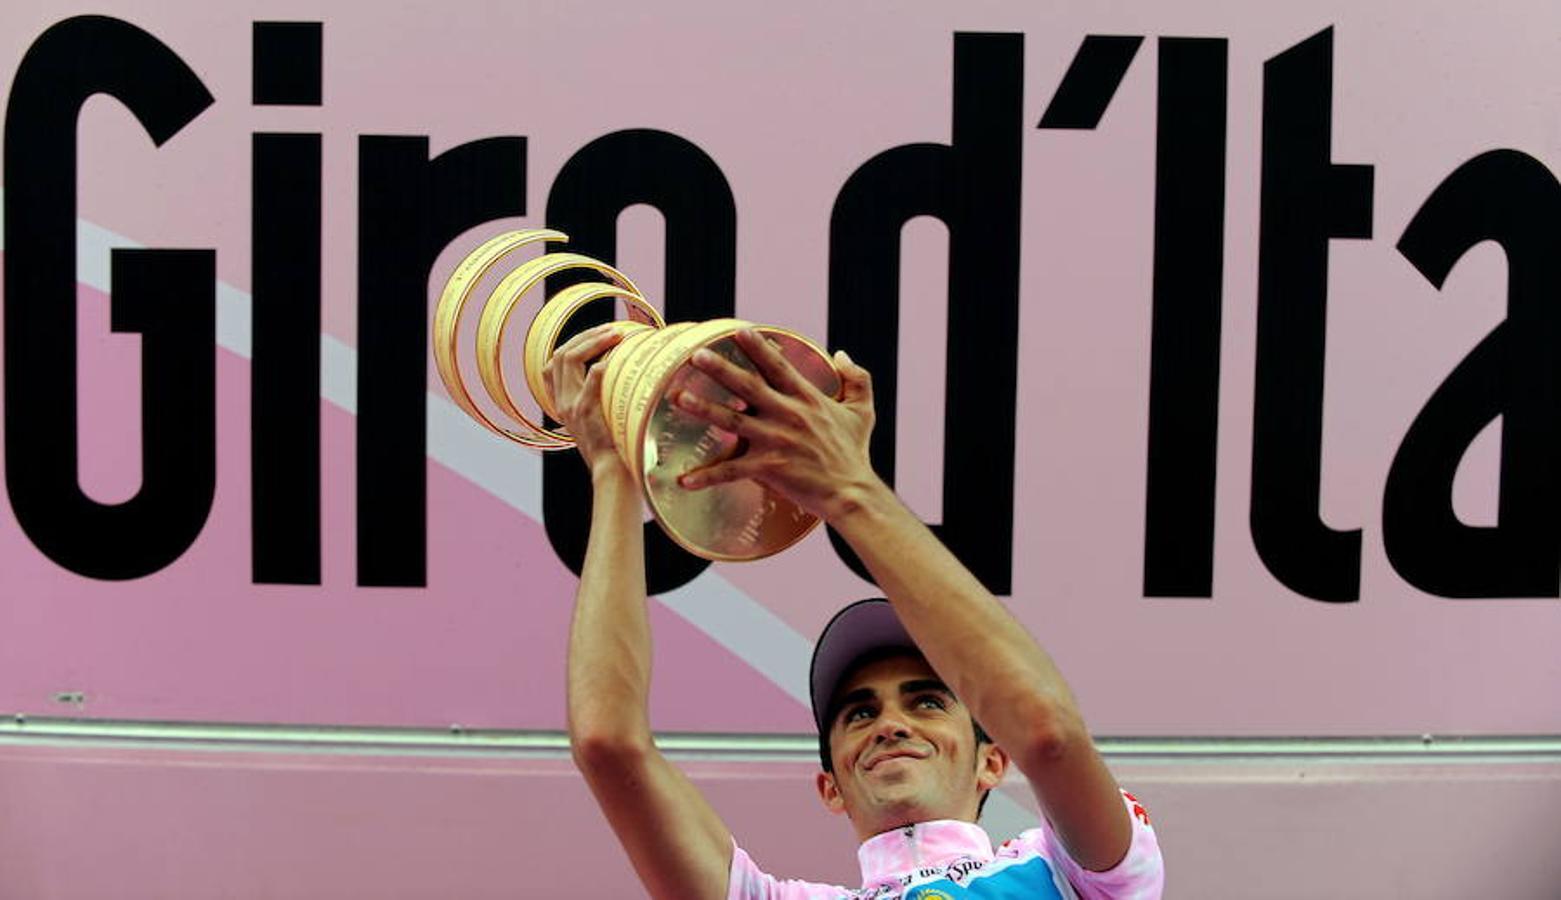 El corredor de Pinto levantando el trofeo que le consagra como ganador del 'Giro de Italia 2008'